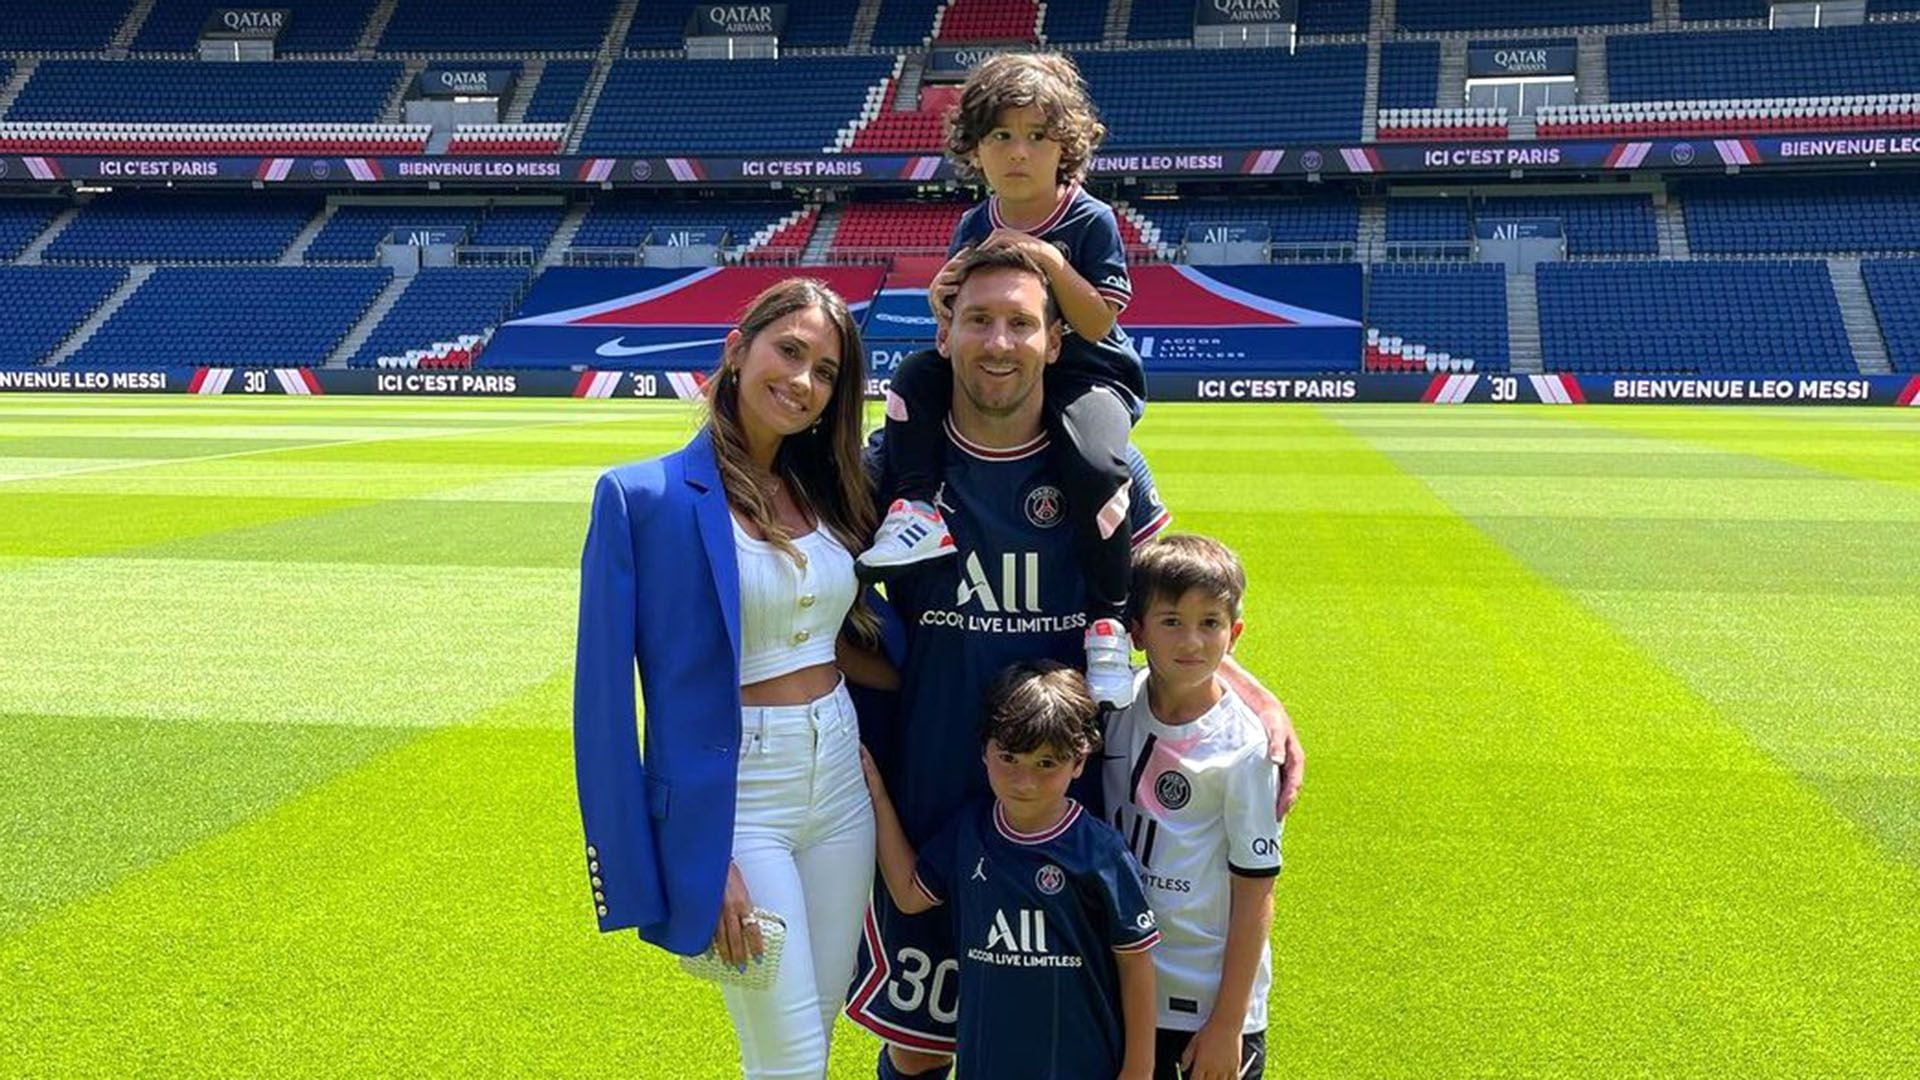 La primera foto de Lionel Messi y su familia en el estadio del PSG (@antonelaroccuzzo)